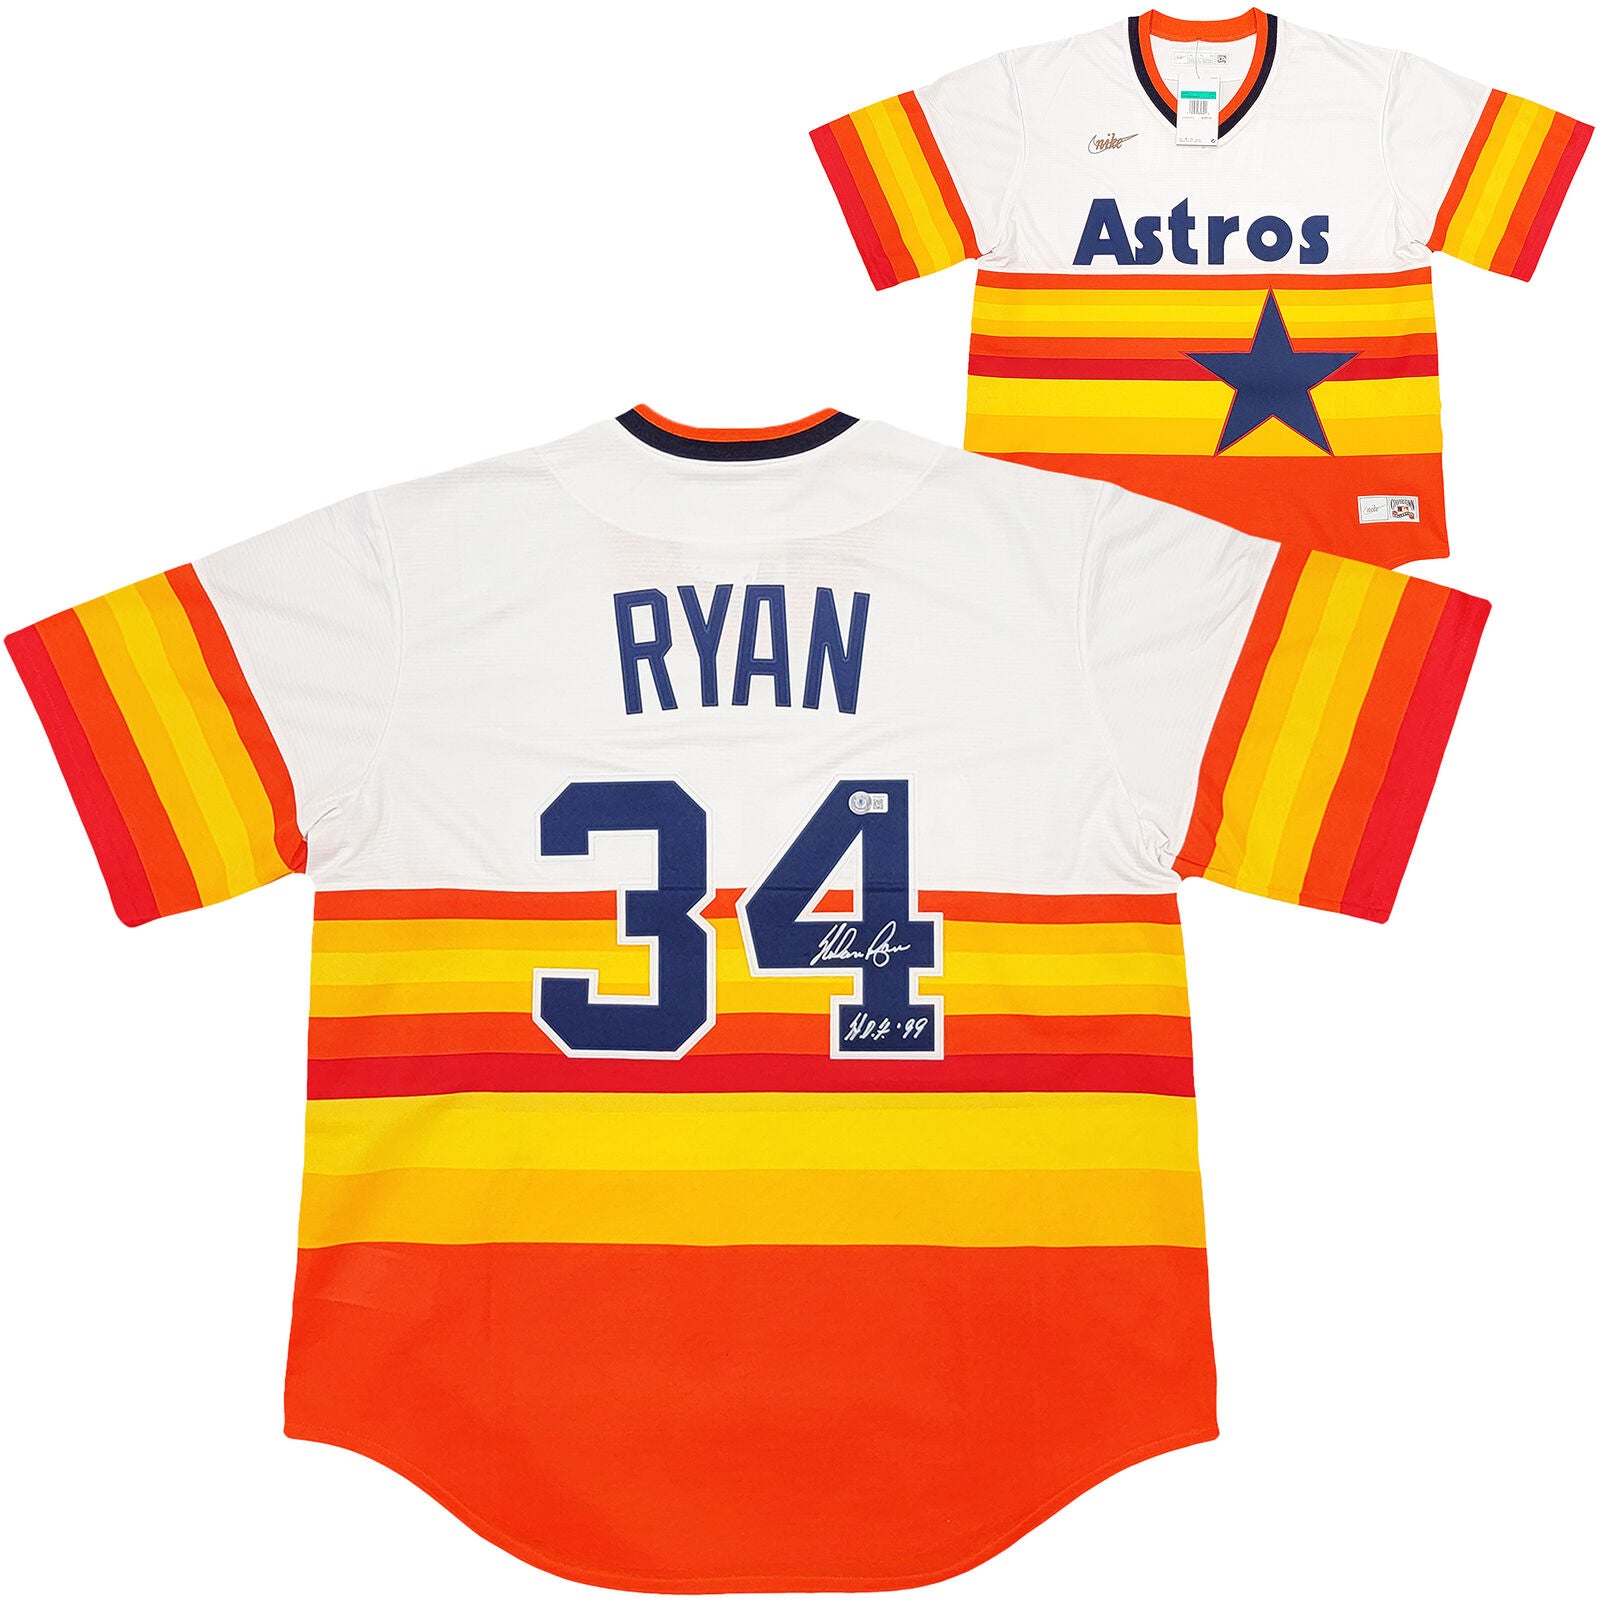 Astros Nolan Ryan Autographed Rainbow Stripes Nike Jersey XL HOF Beckett 211256